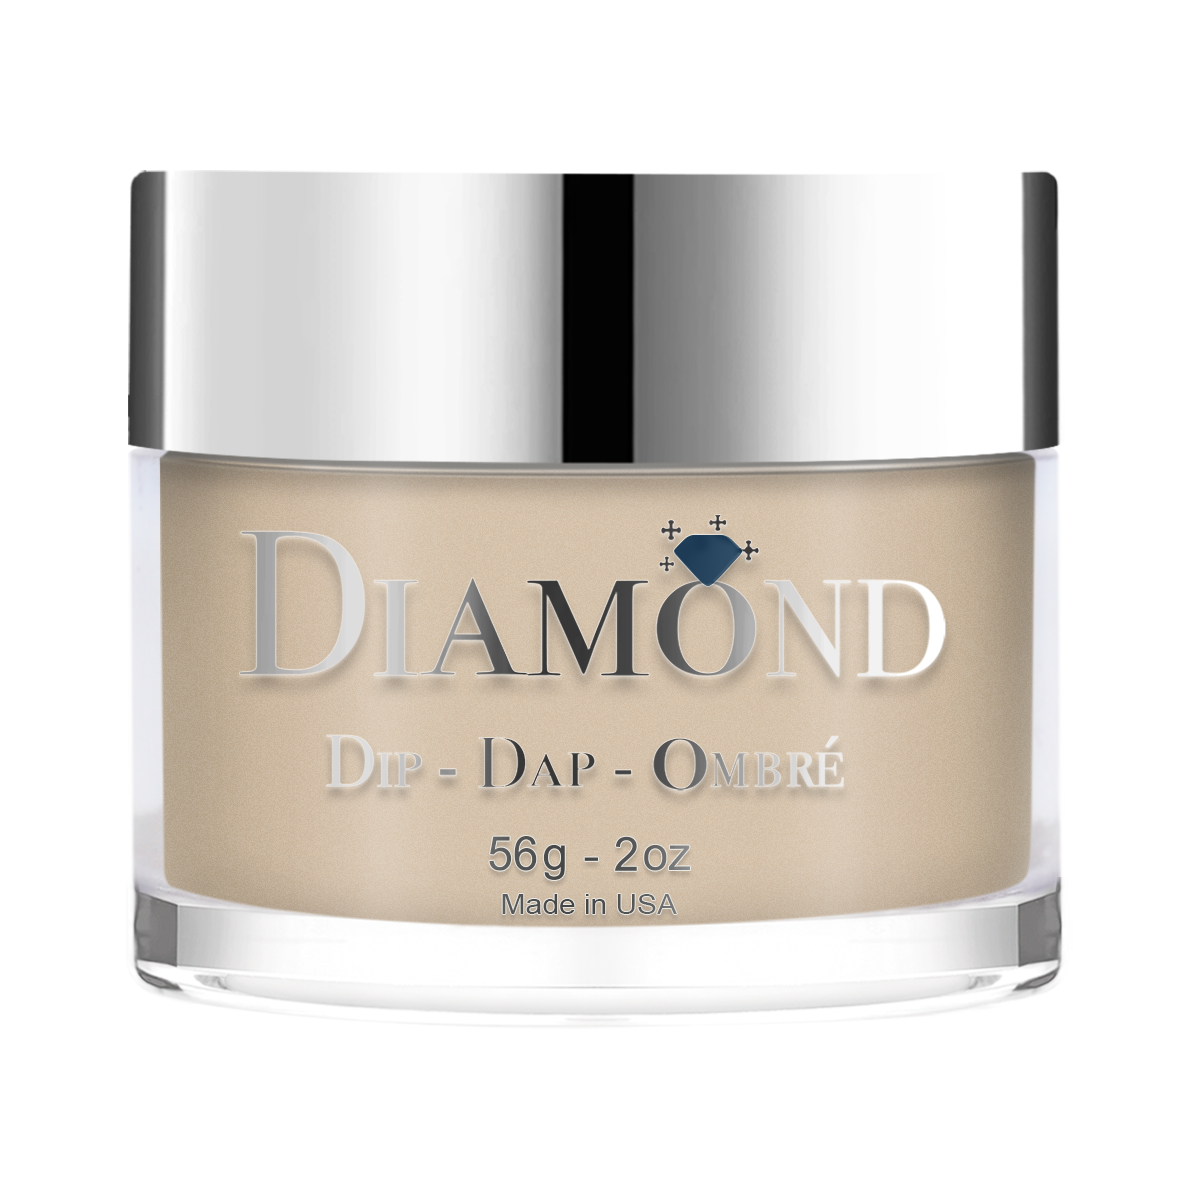 Diamond Dip & Dap Ombre Powder - 022